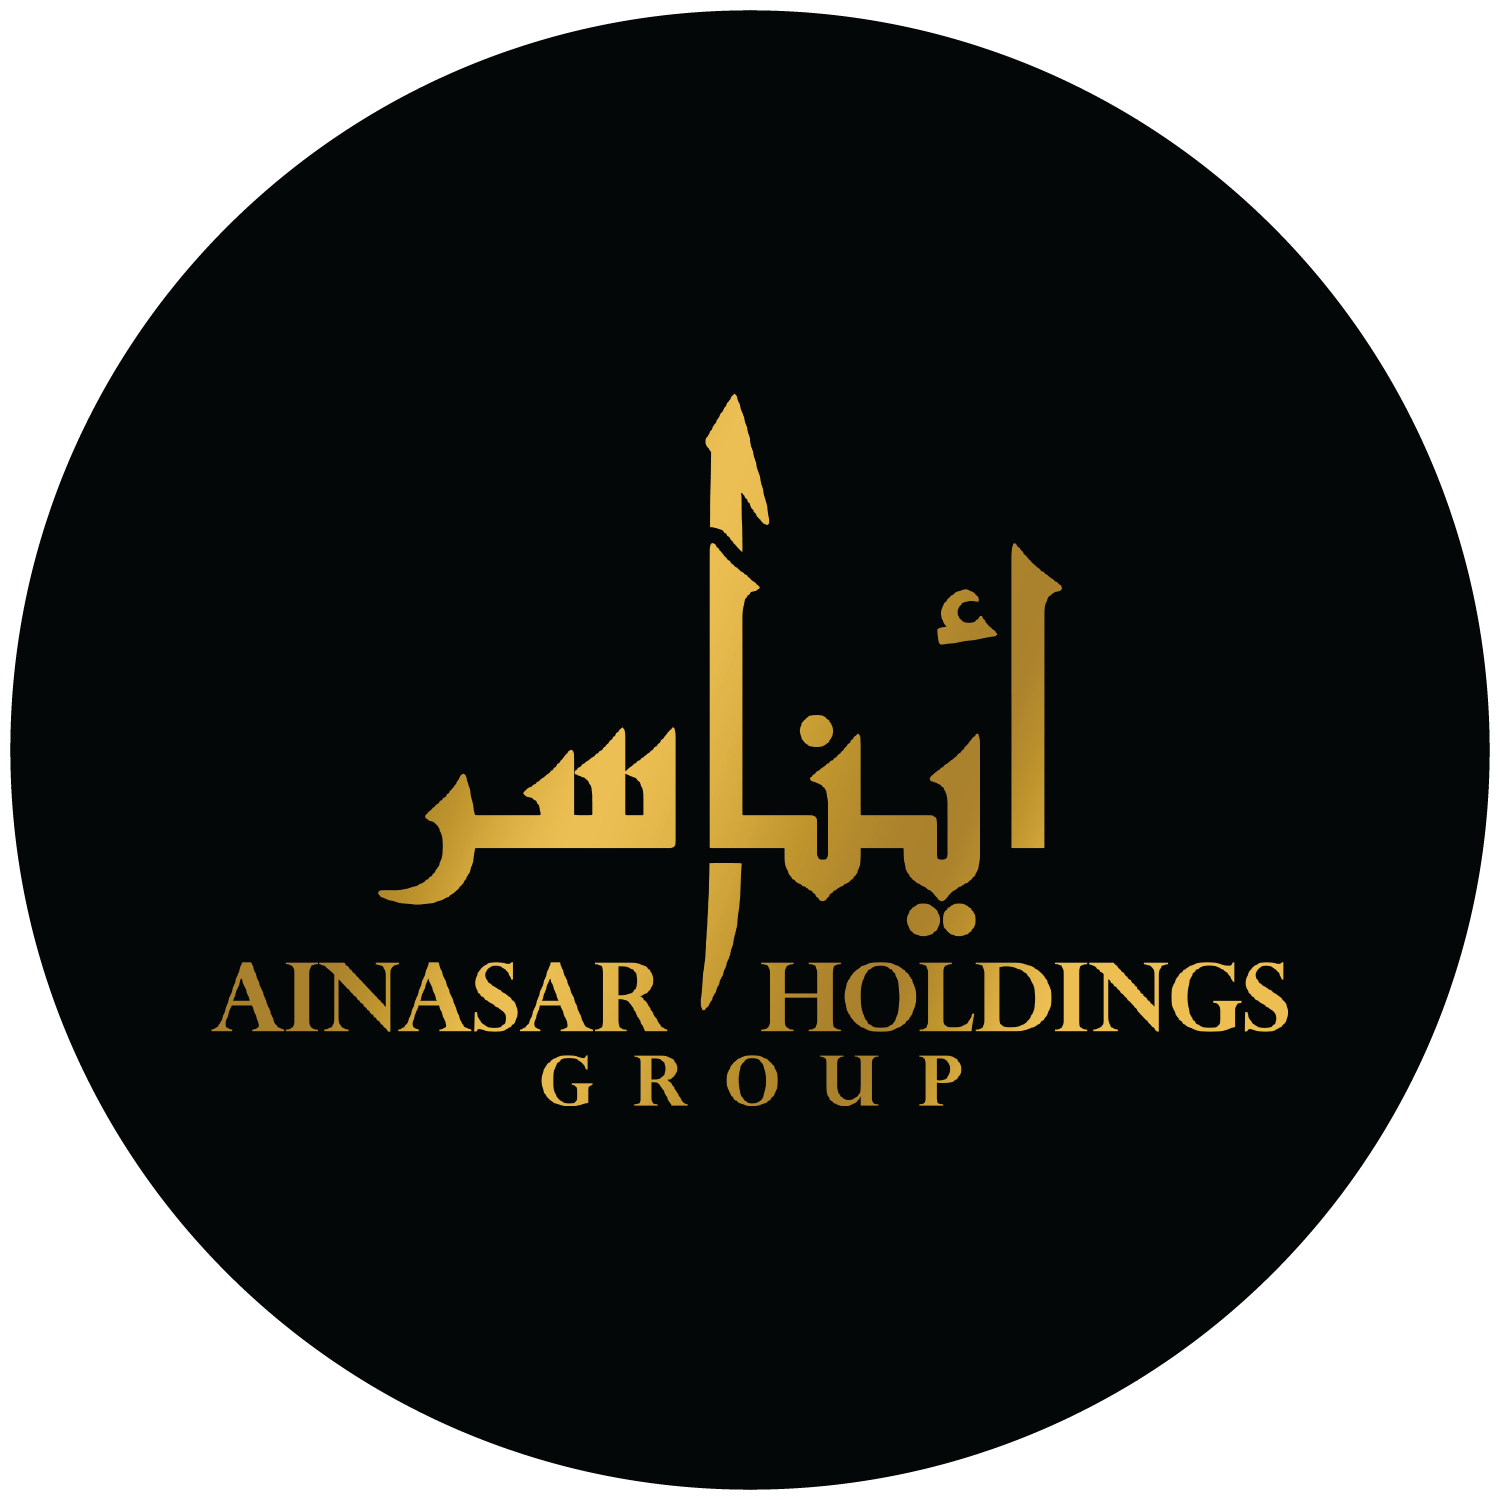 Ainasar Holdings Group